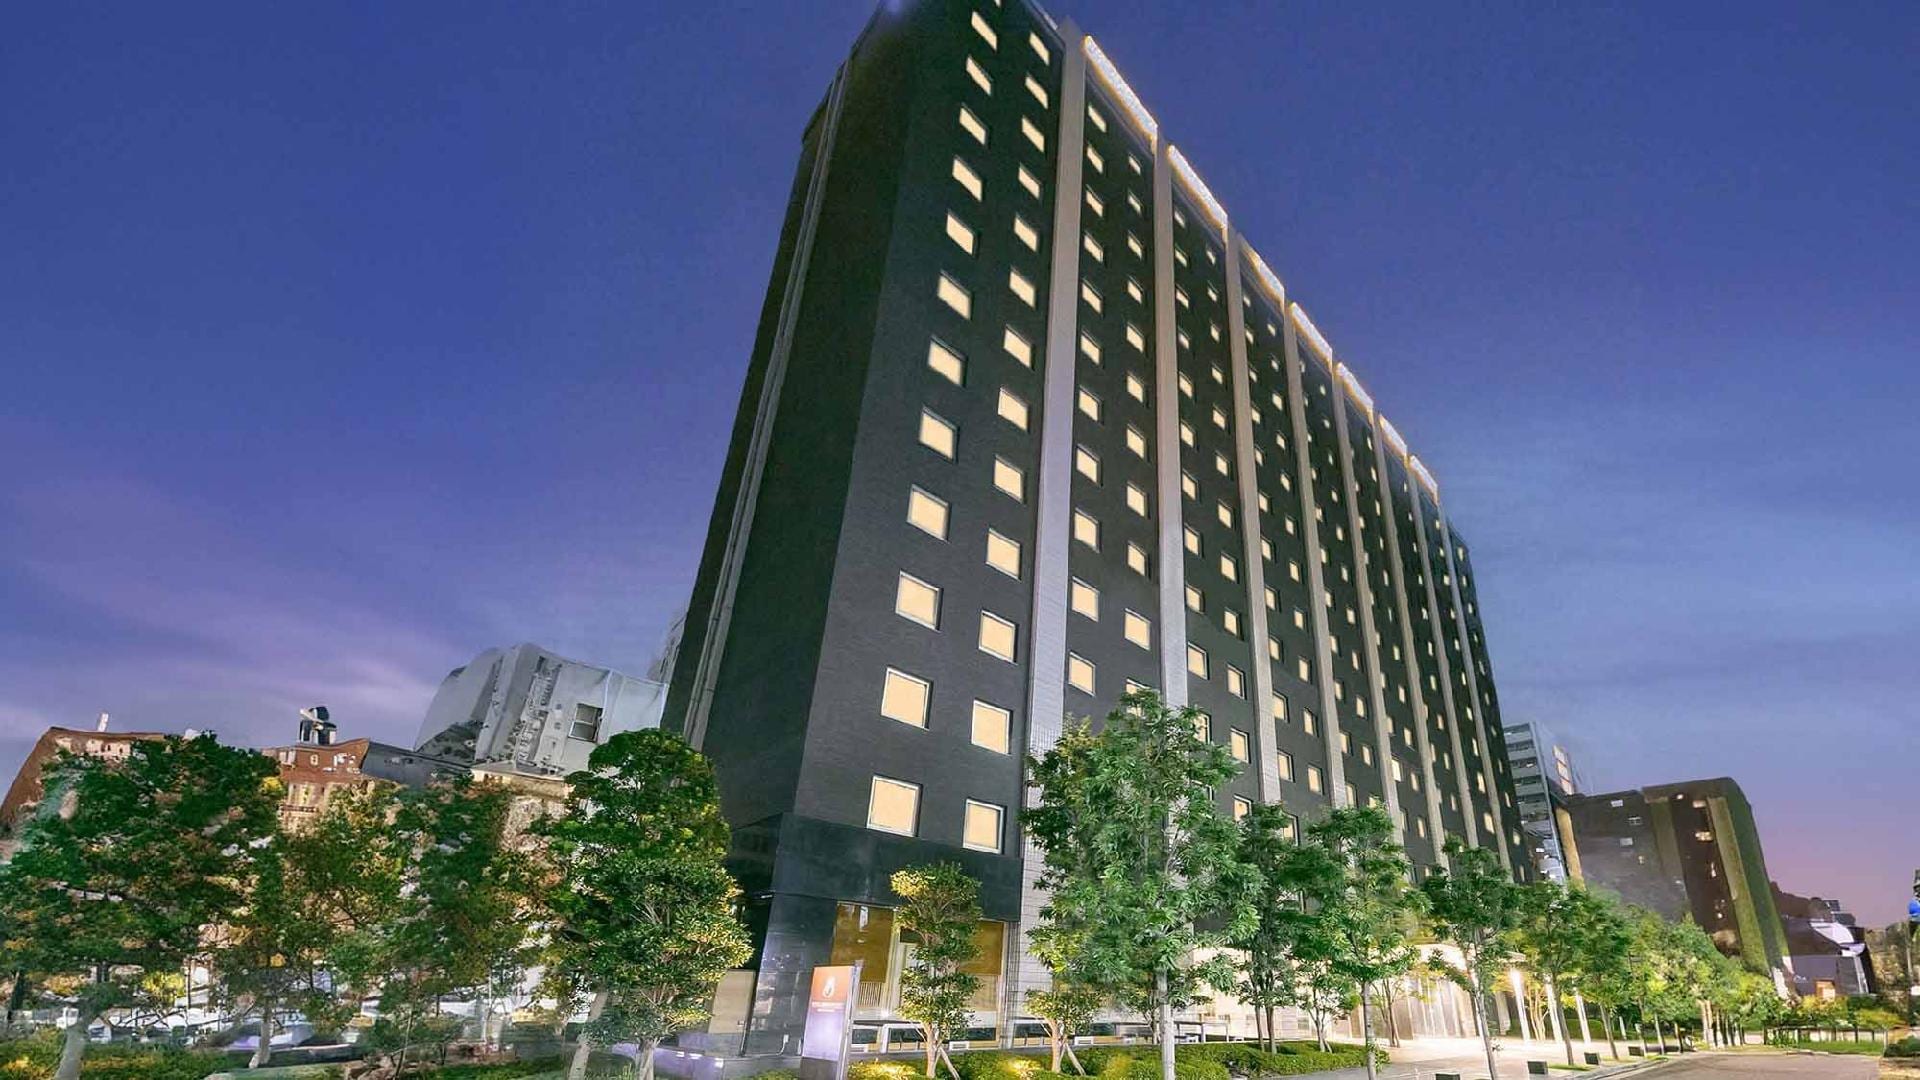 [Exterior] Enjoy a higher-grade stay in the historic Kitahama area of Osaka.